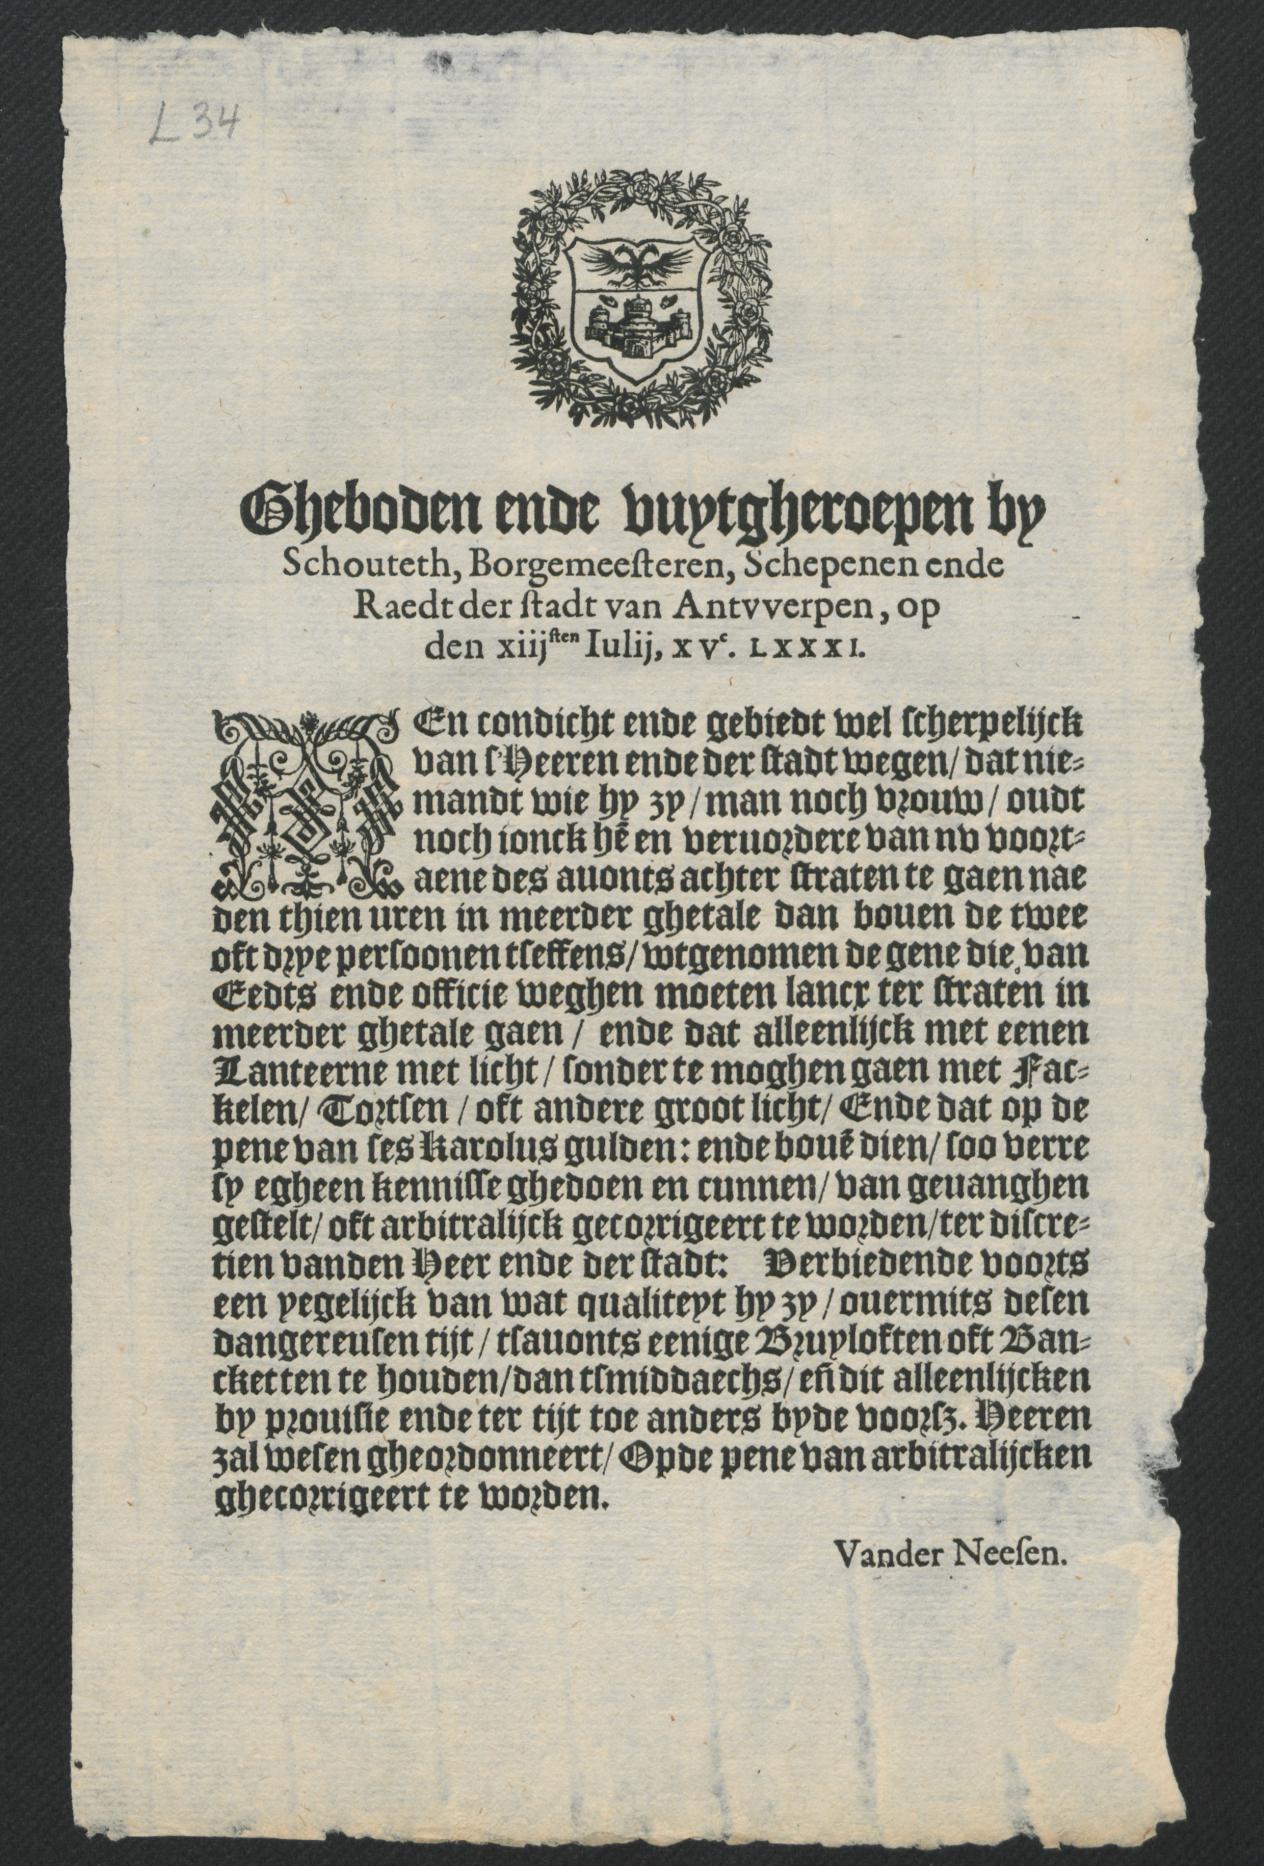 13 juli 1581, Christoffel Plantijn, Antwerpen Nr. A 1844/ 58, L 34 (45 kopies)